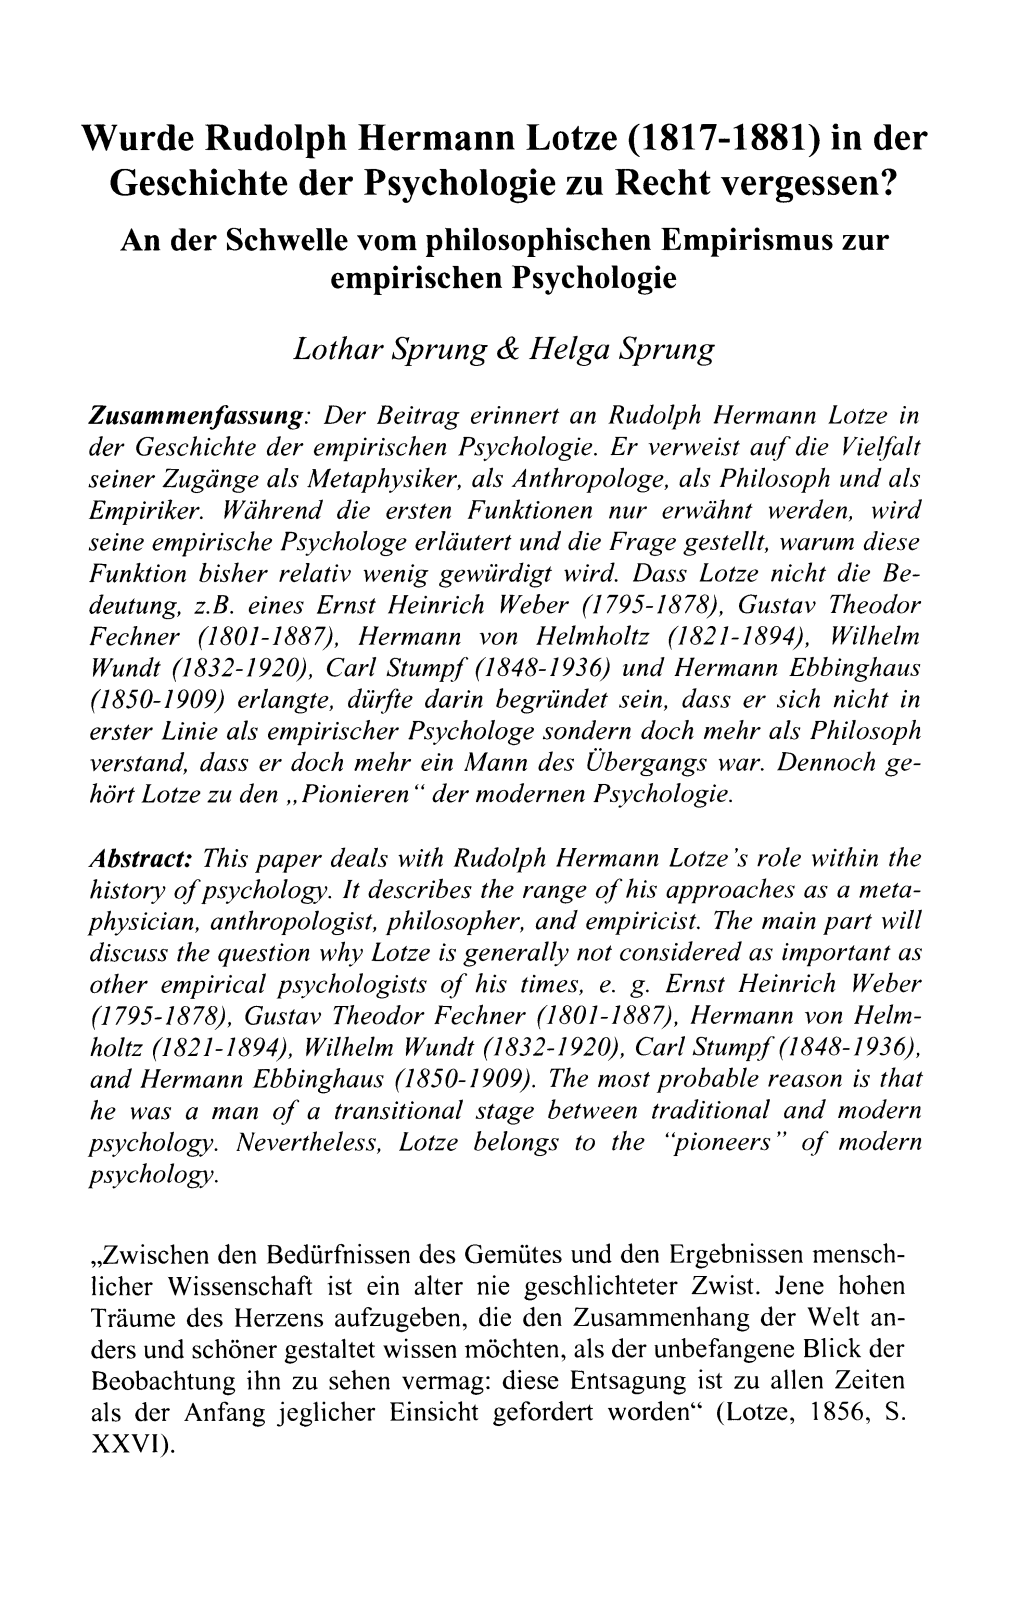 Wurde Rudolph Hermann Lotze (1817-1881) in Der Geschichte Der